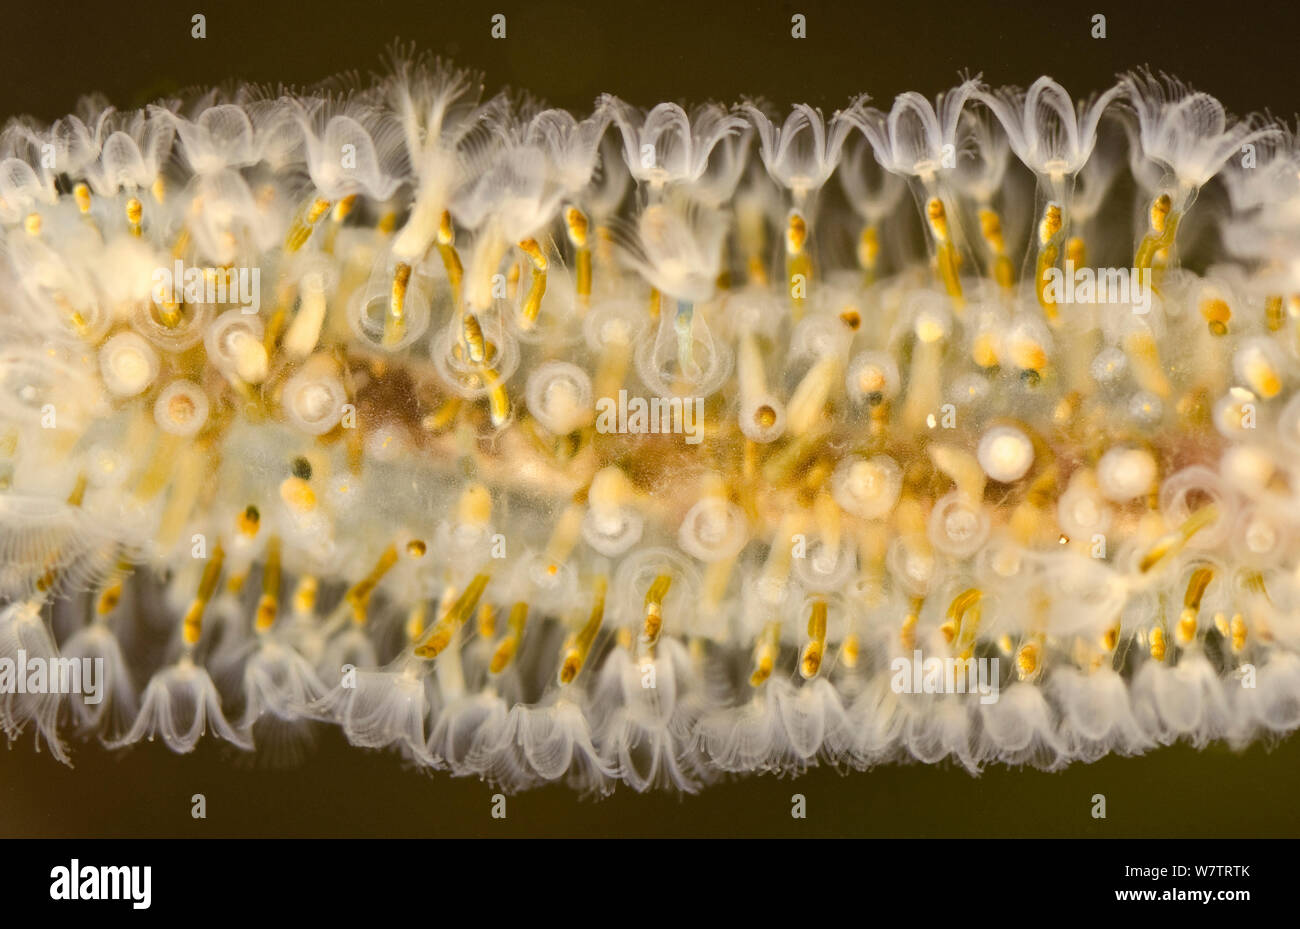 Di acqua dolce (Bryozoan Cristatella mucedo) colonia di zooids attaccato a una radice, Europa, giugno, condizioni controllate Foto Stock